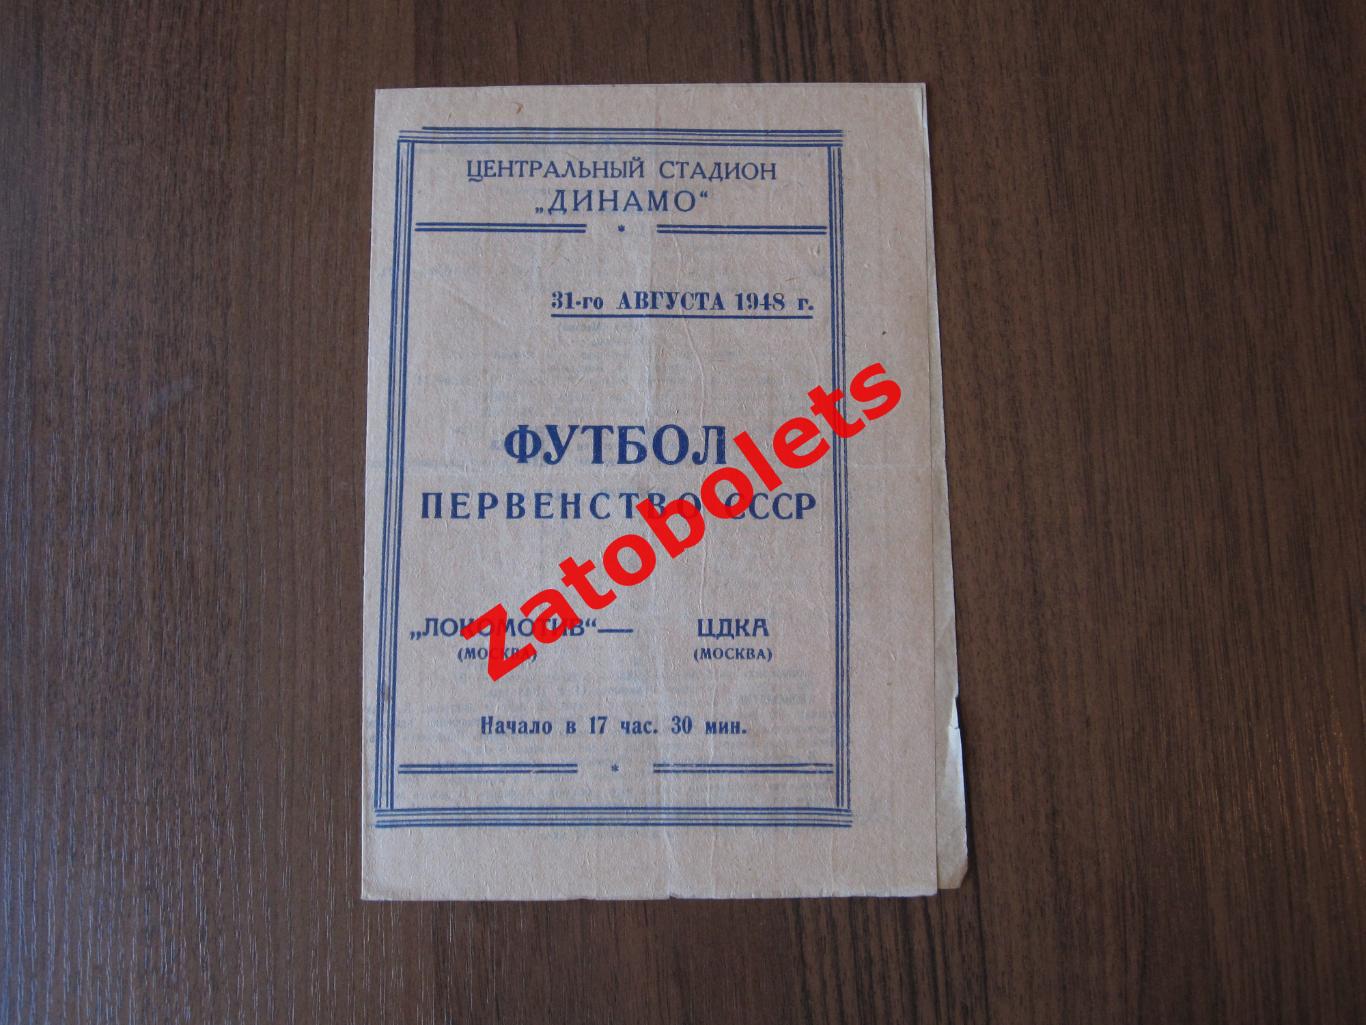 Локомотив Москва - ЦДКА 31.08.1948